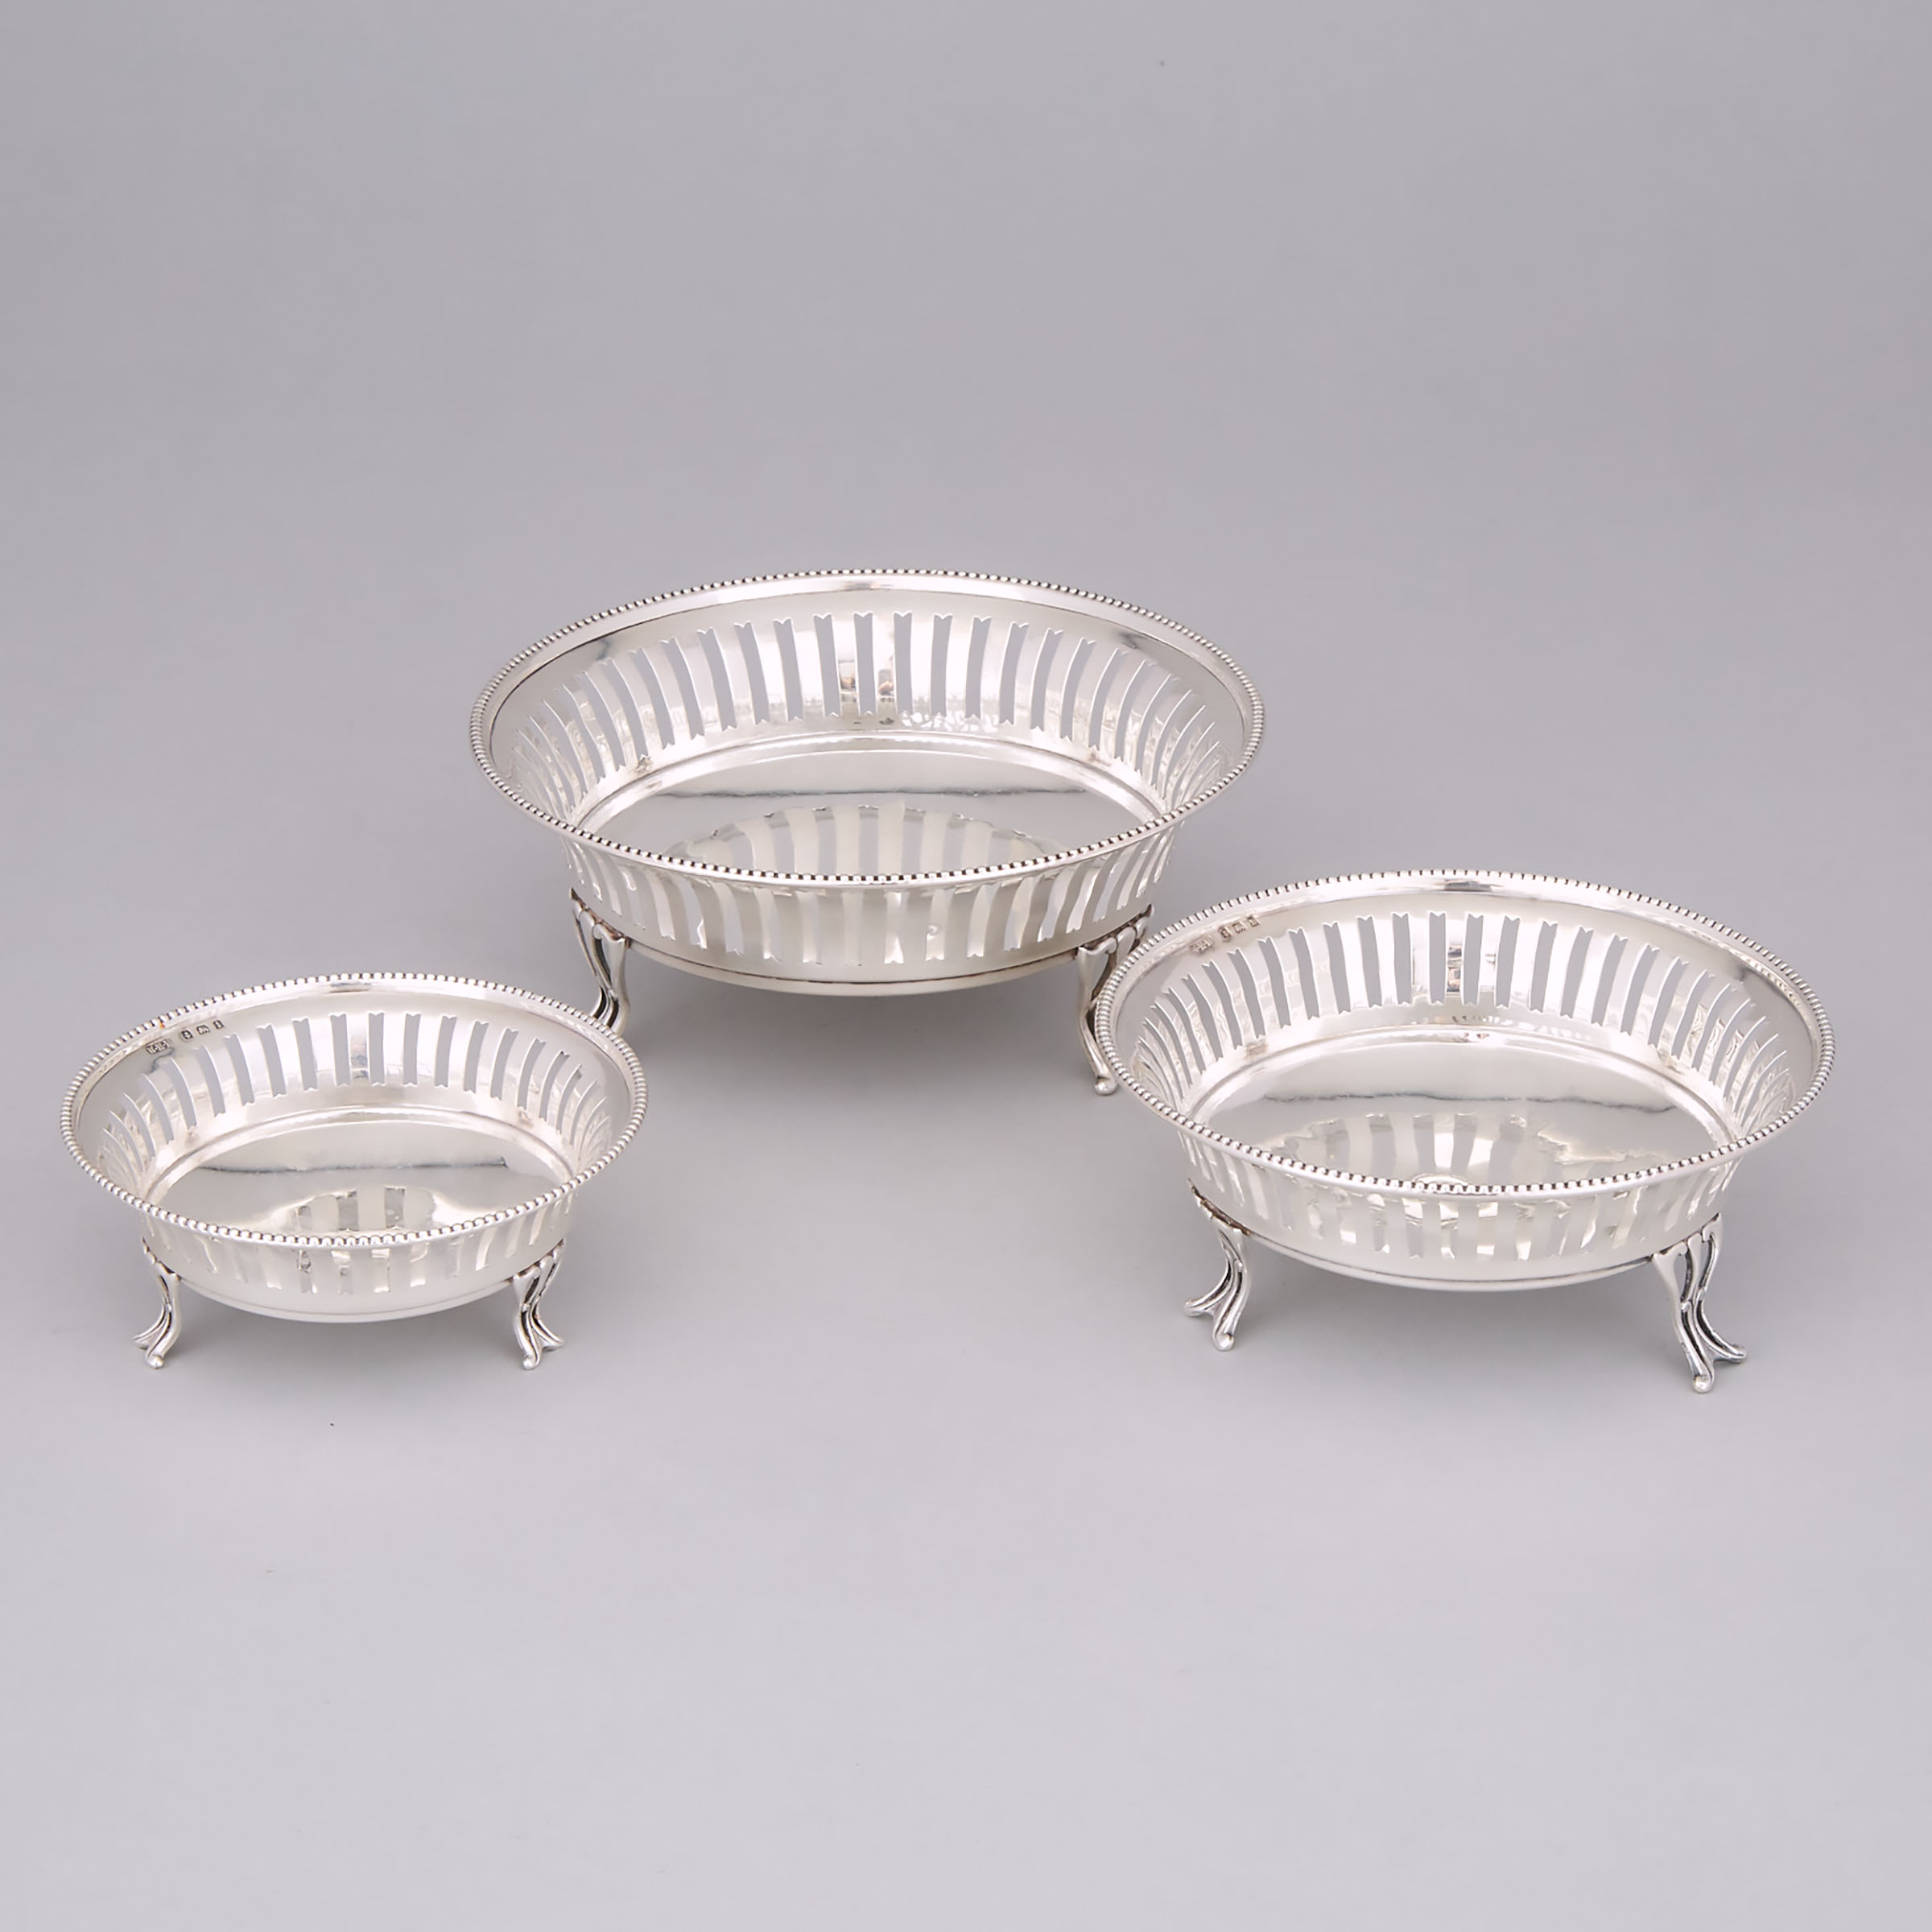 Graduated Set of Three Edwardian Silver Pierced Bowls, William Hair Haseler, Birmingham, 1907/08